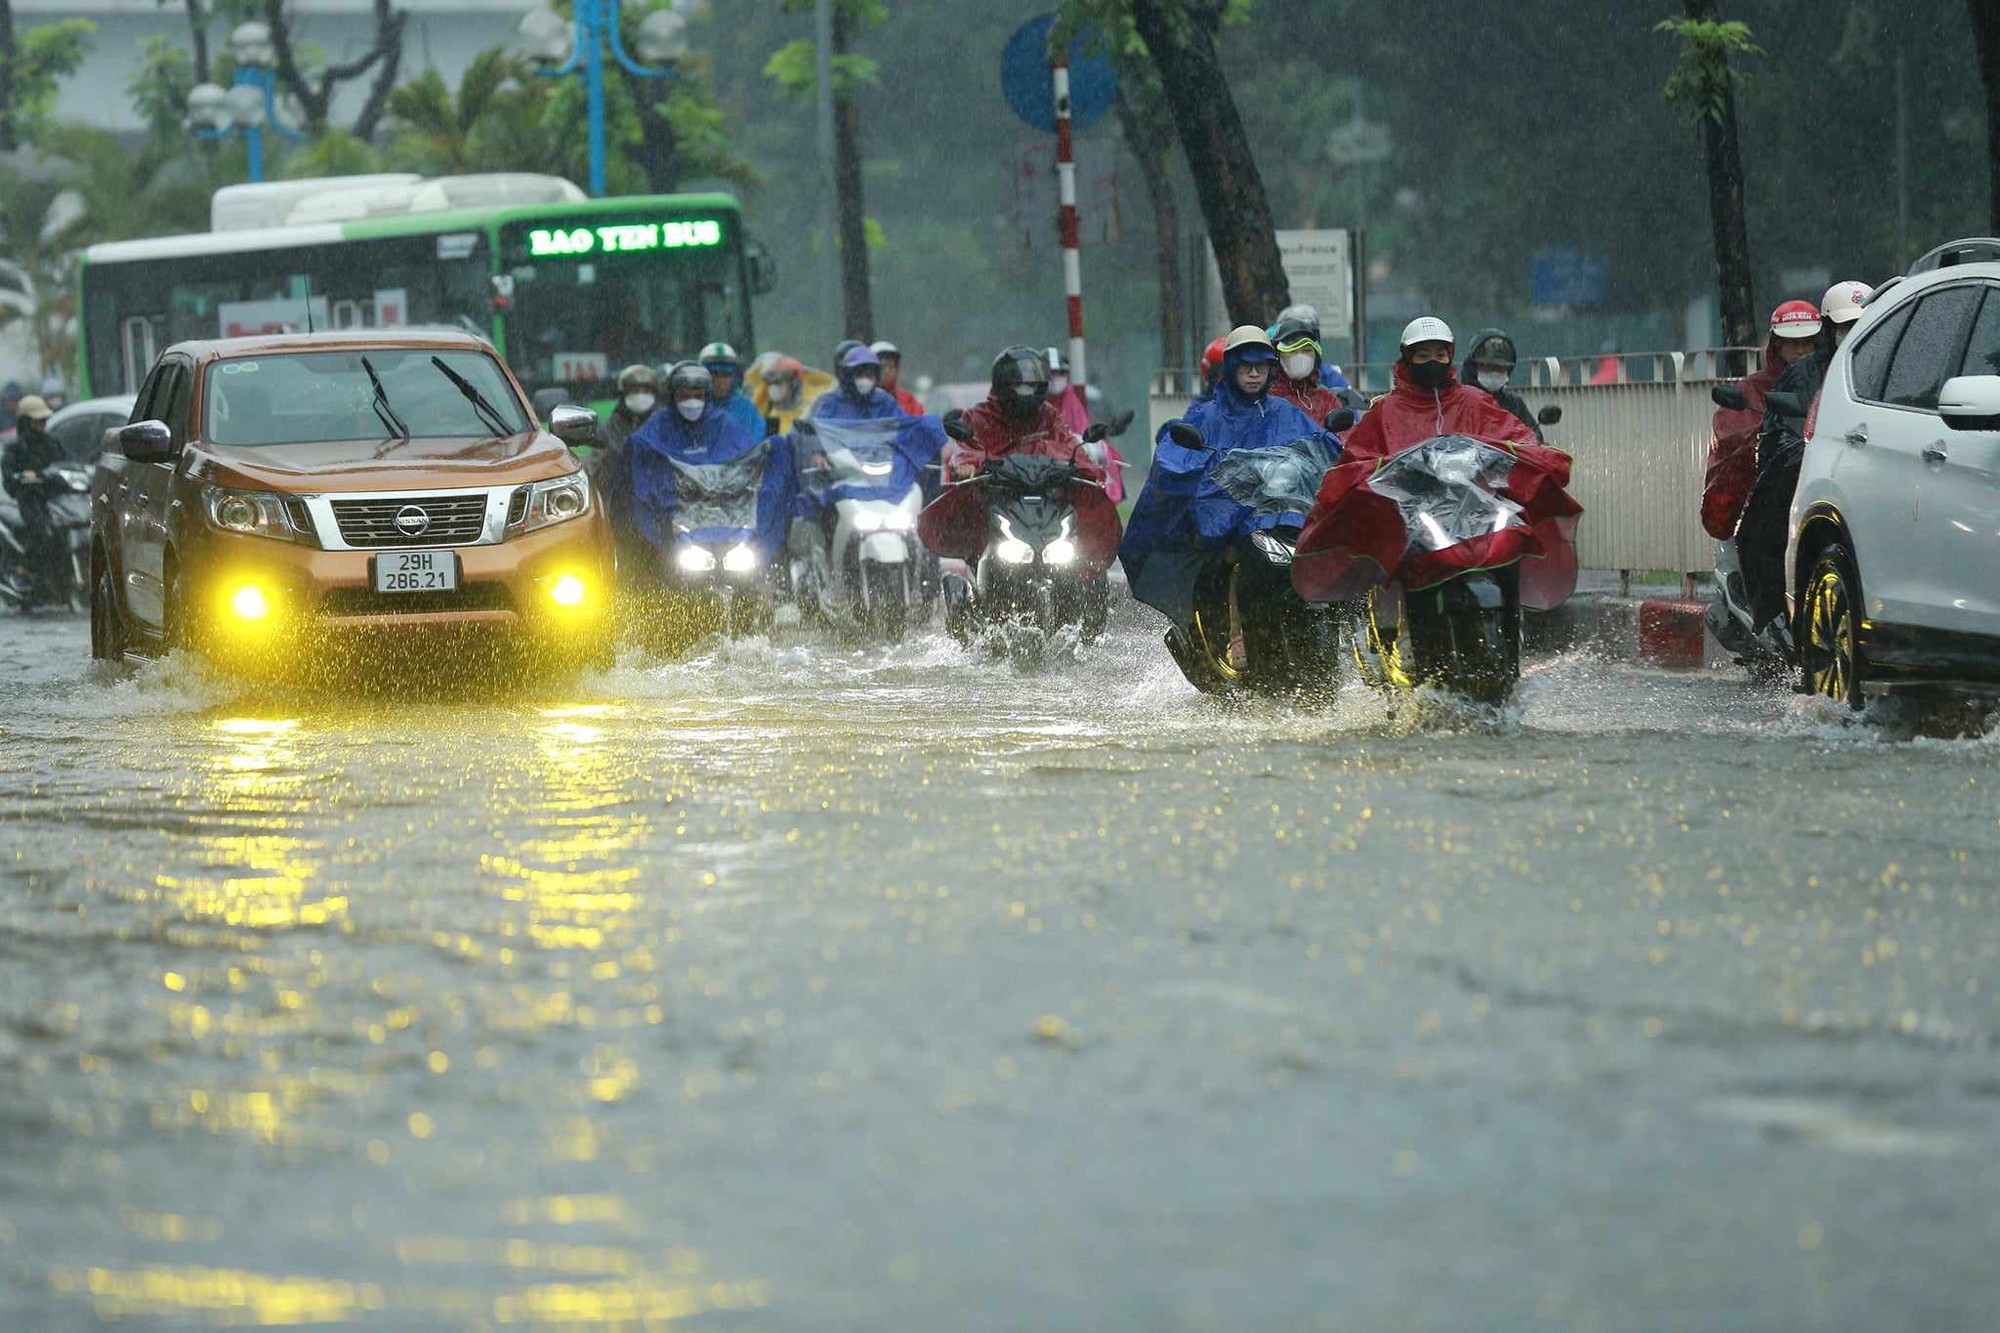 Ngay lúc này tại Hà Nội: Nhiều tuyến đường đã ngập rất nặng, xe chết máy la liệt- Ảnh 10.